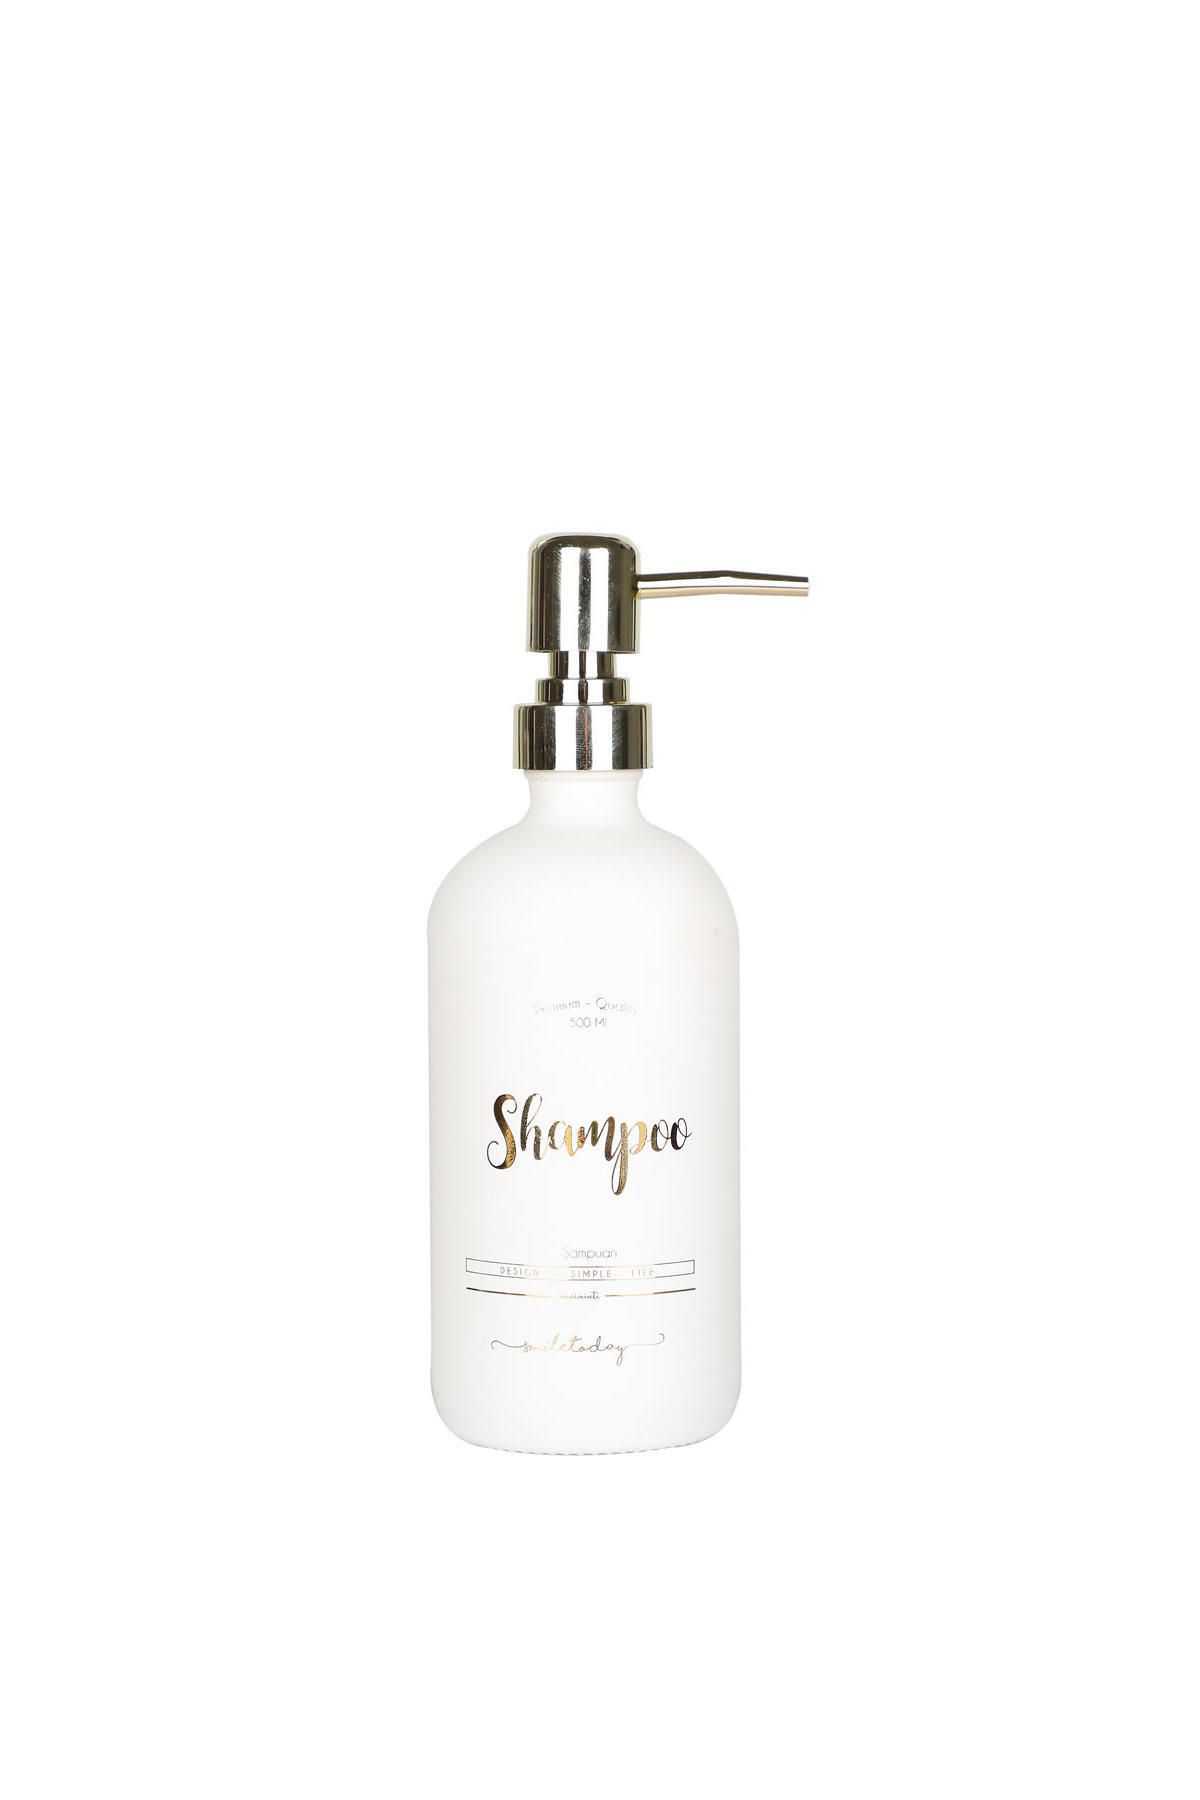 Miniminti Beyaz Cam Şampuan Şişesi - 500 Ml (shampoo)